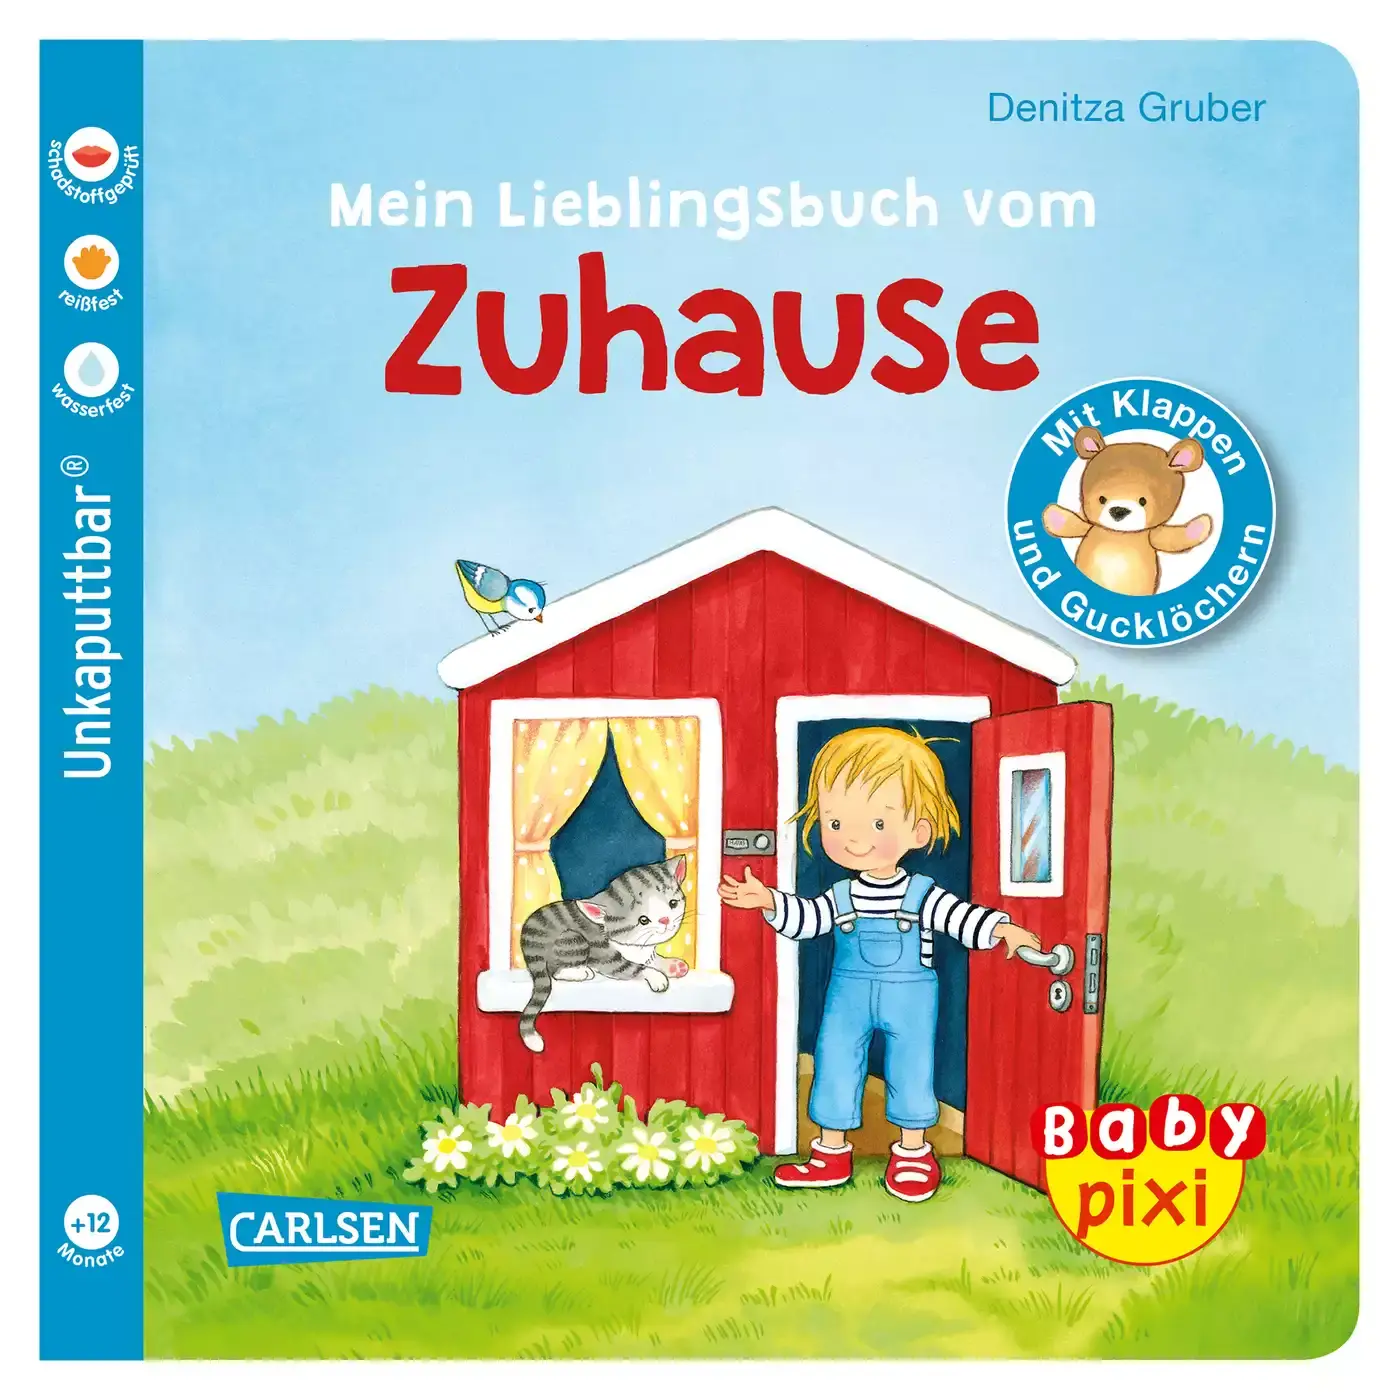 Baby Pixi - Mein Lieblingsbuch vom Zuhause CARLSEN 2000579081019 3